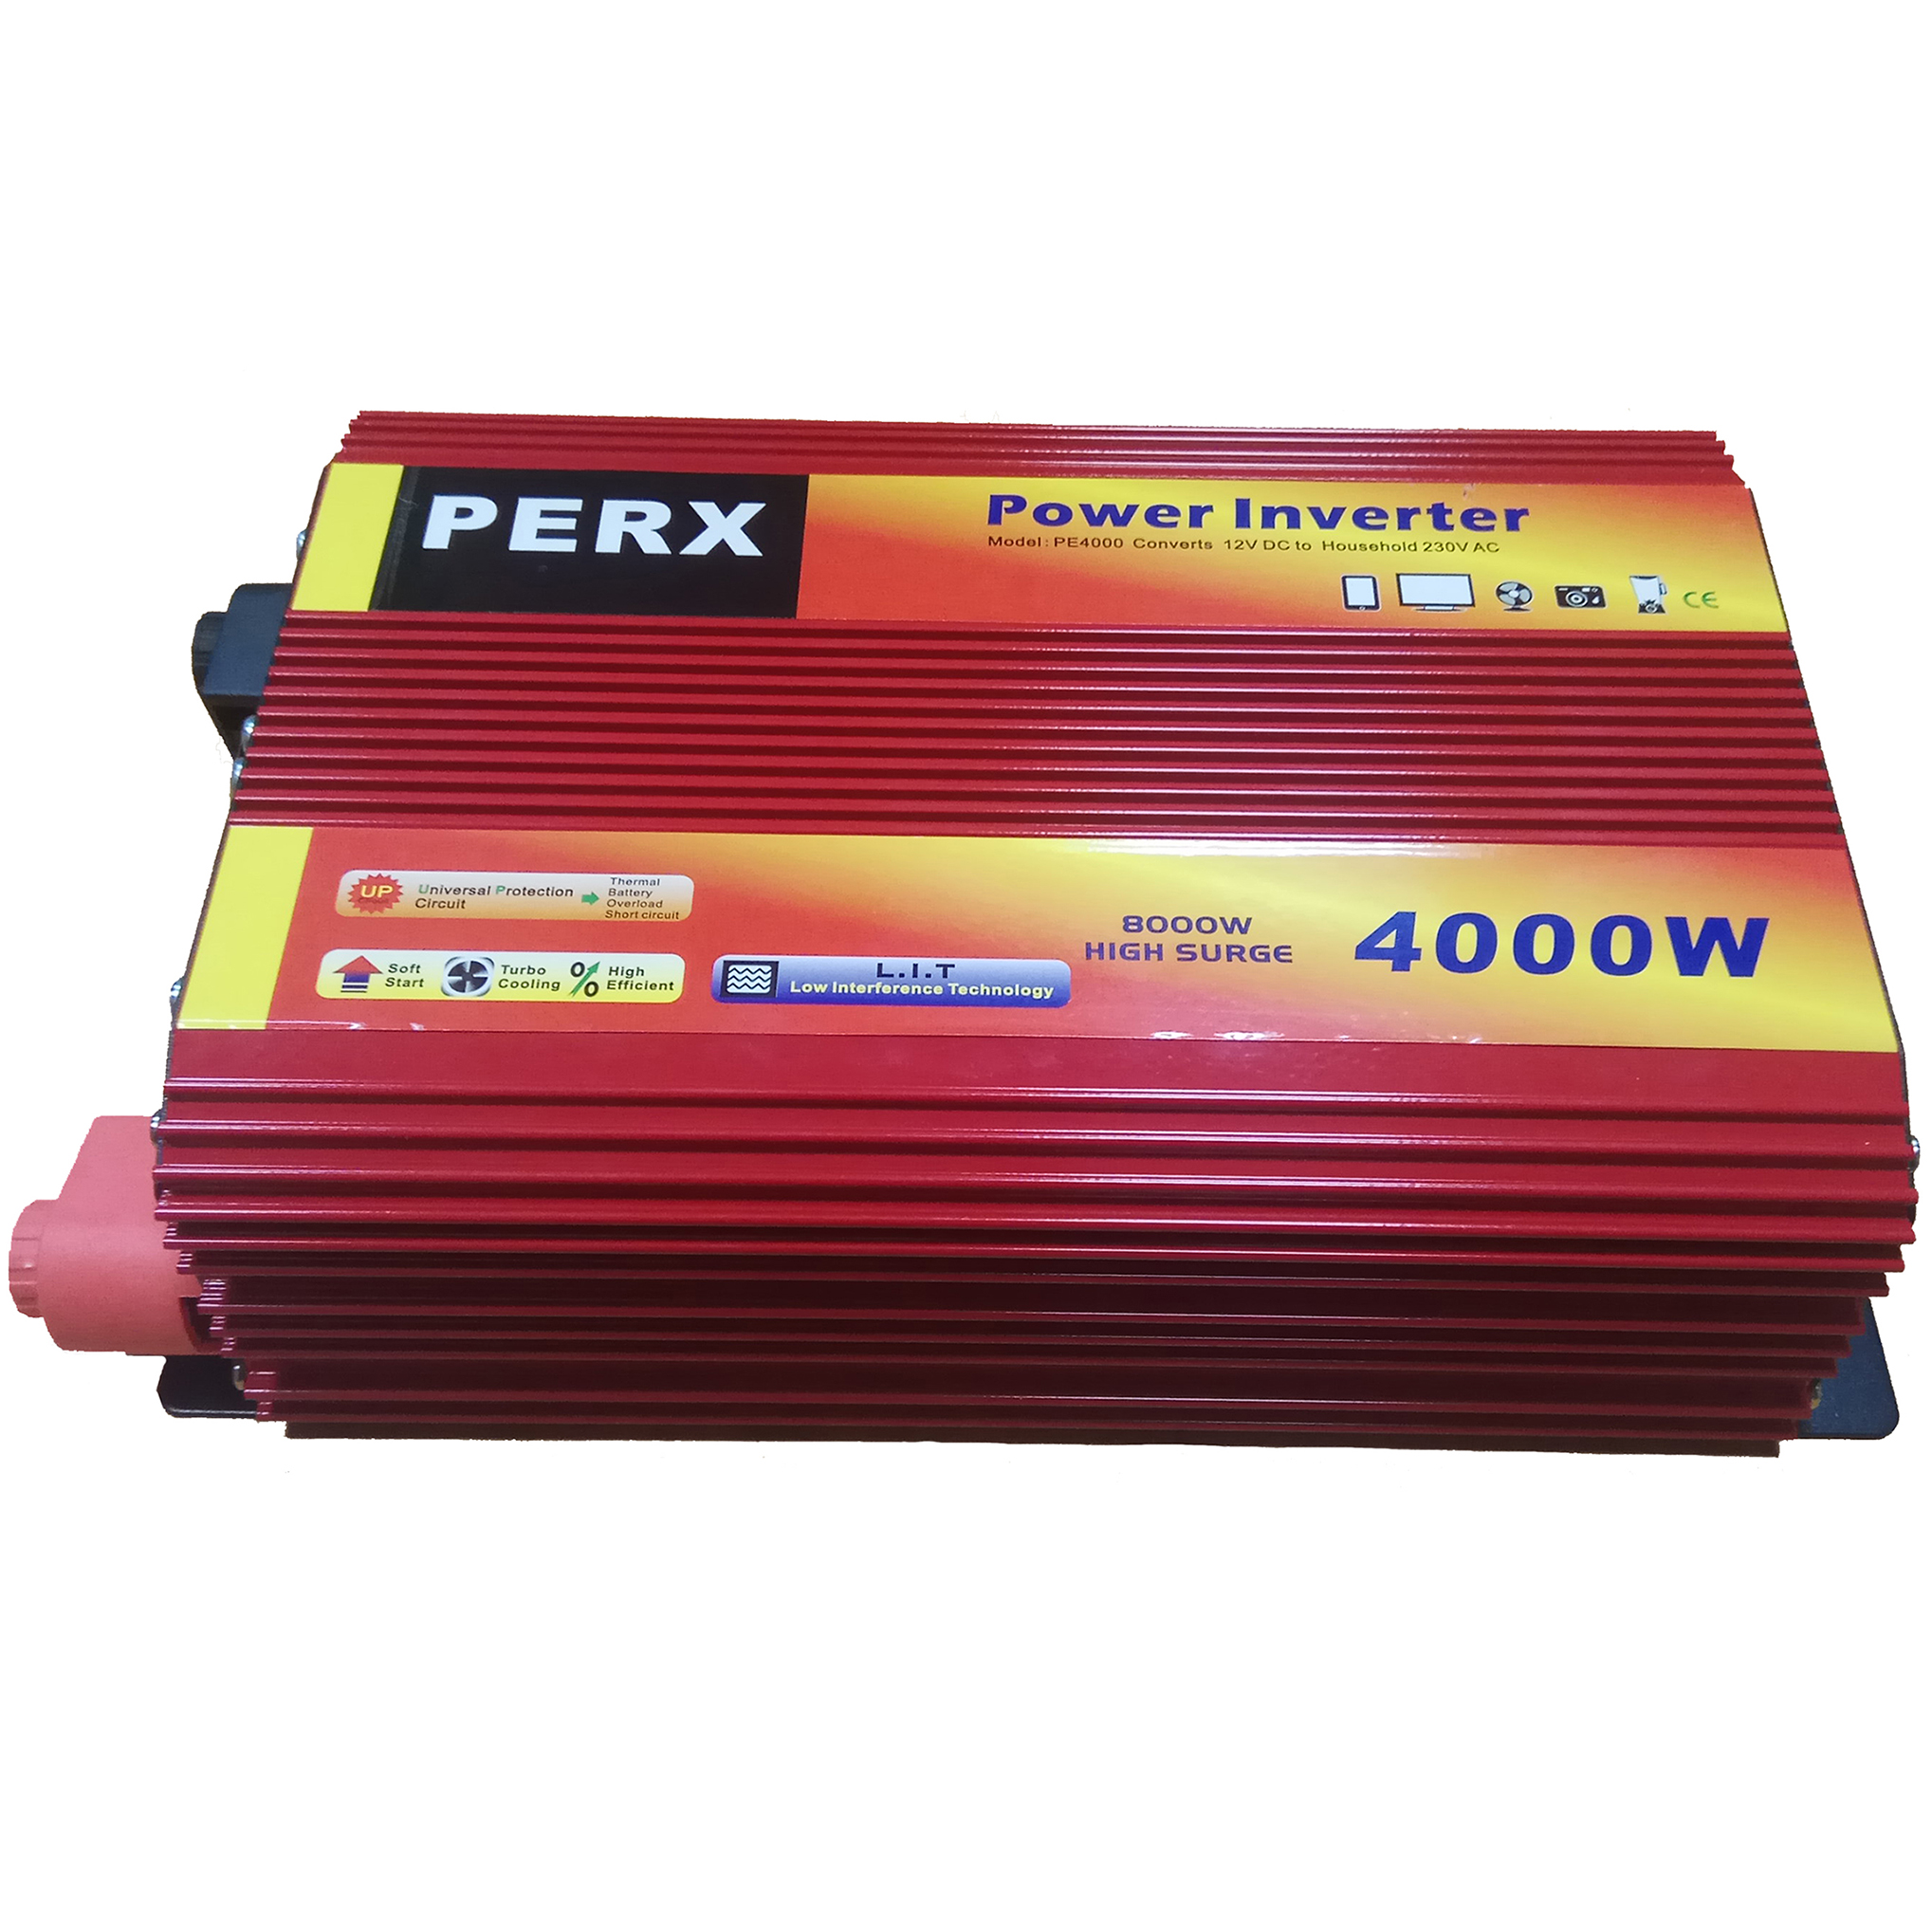 اینورتر پرکس مدل PE 4000-12 ظرفیت 4000 وات